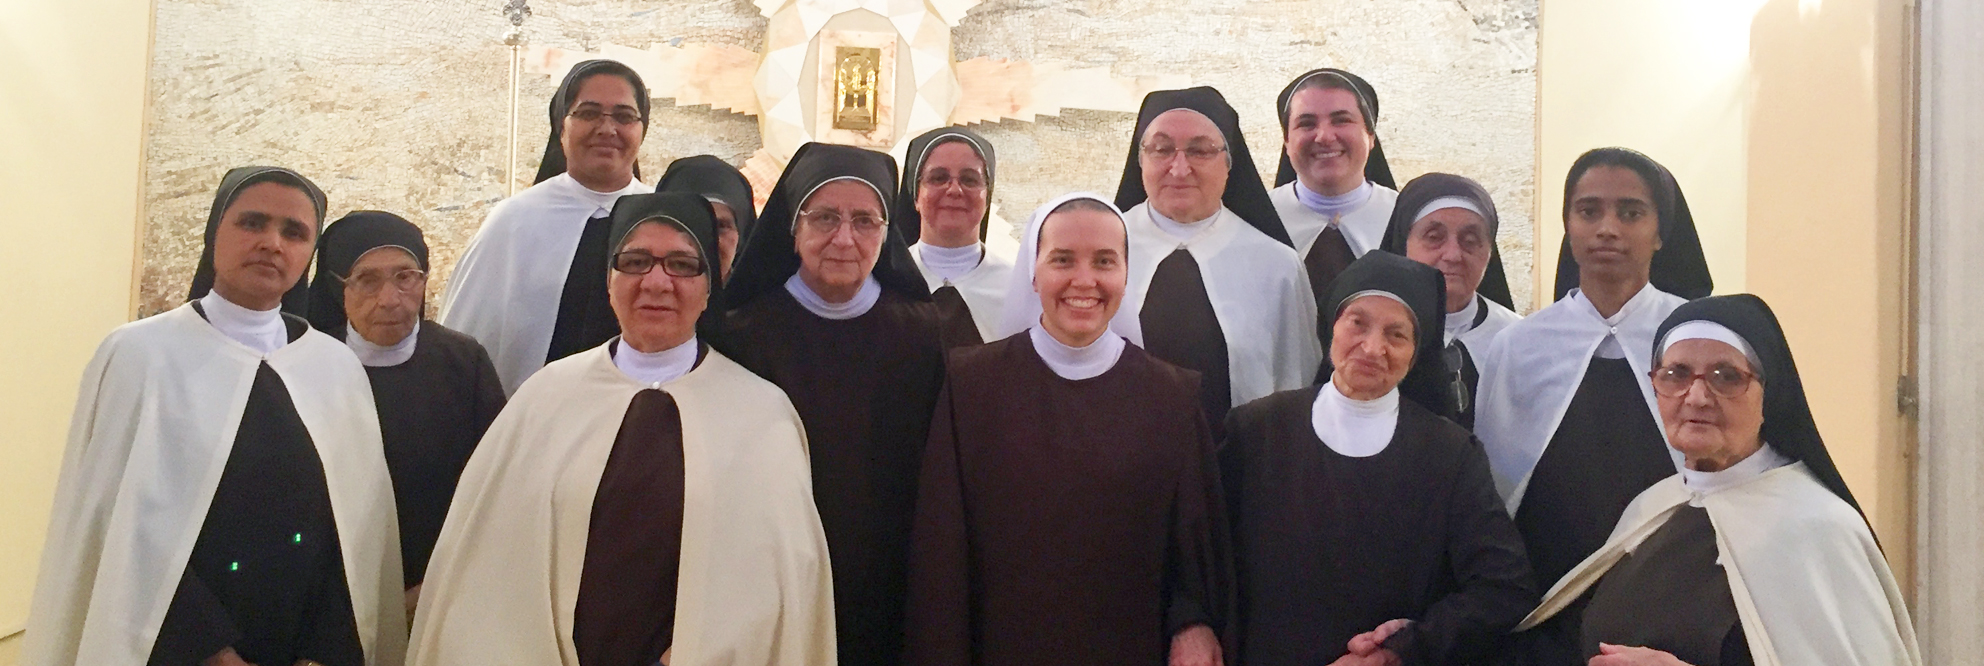 Suore Carmelitane Teresiane Istituto Suore Carmelitane Teresiane